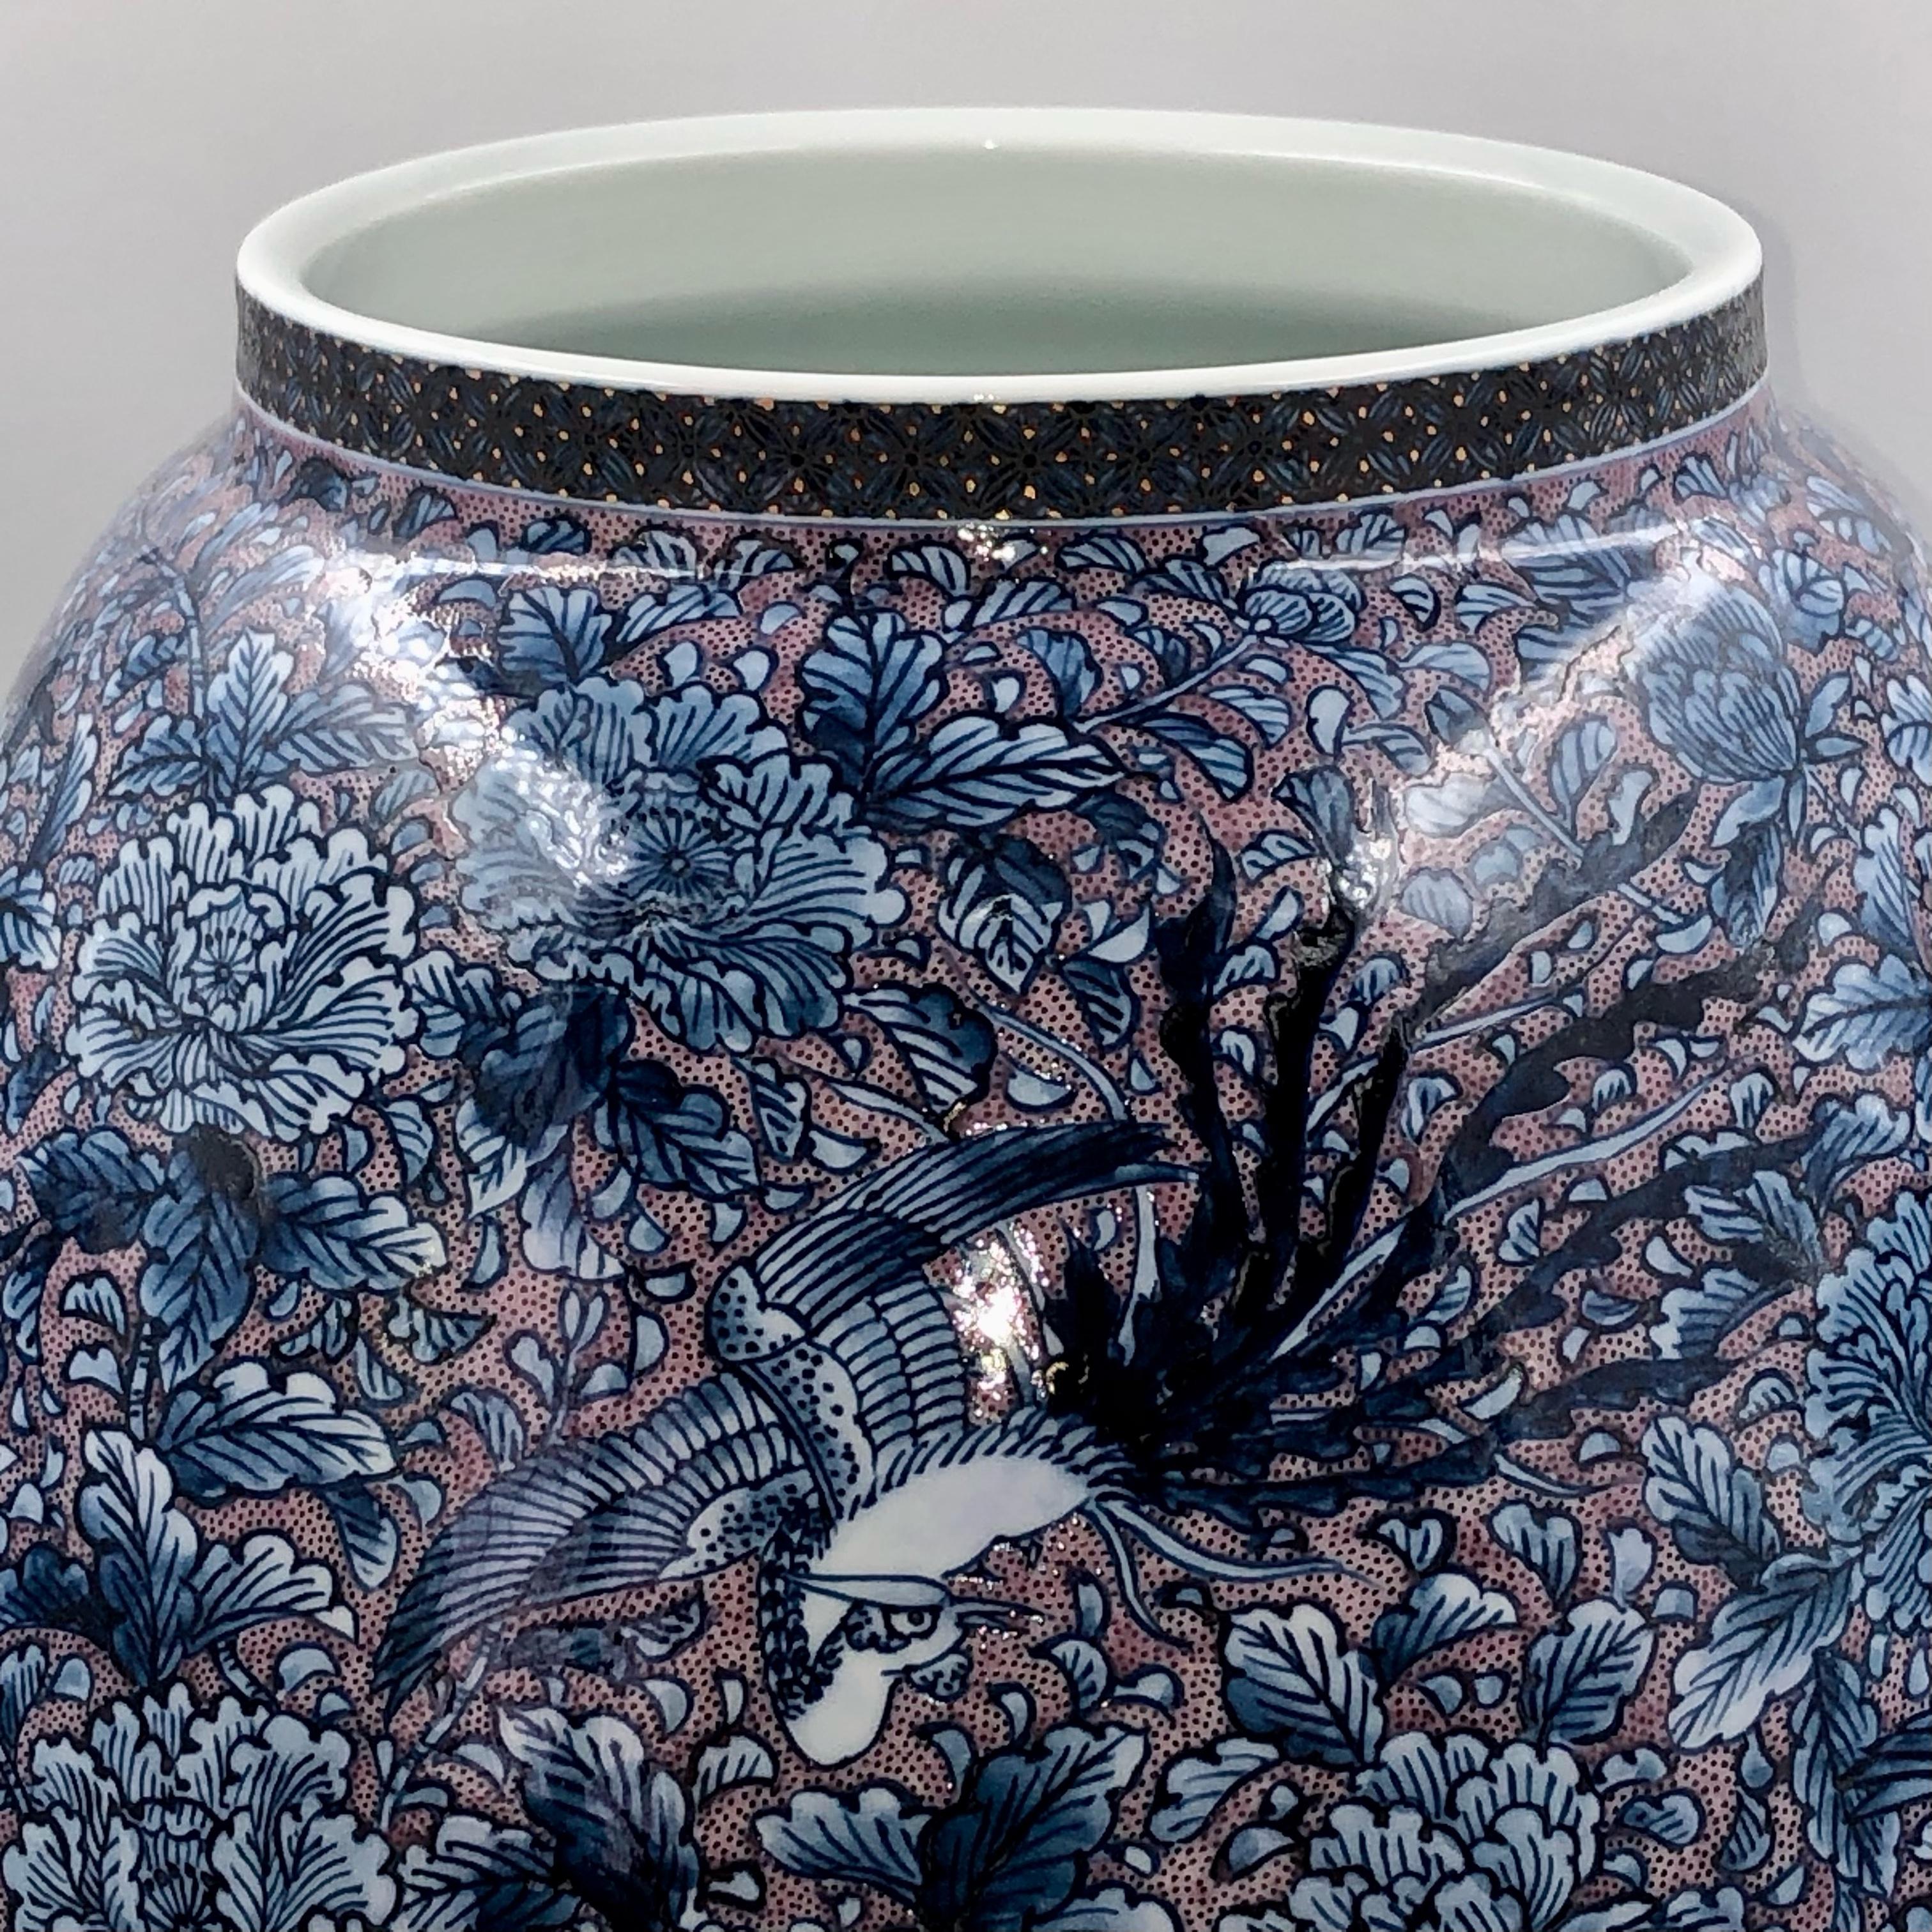 Gilt Japanese Contemporary Blue White Red Porcelain Vase by Master Artist, 2